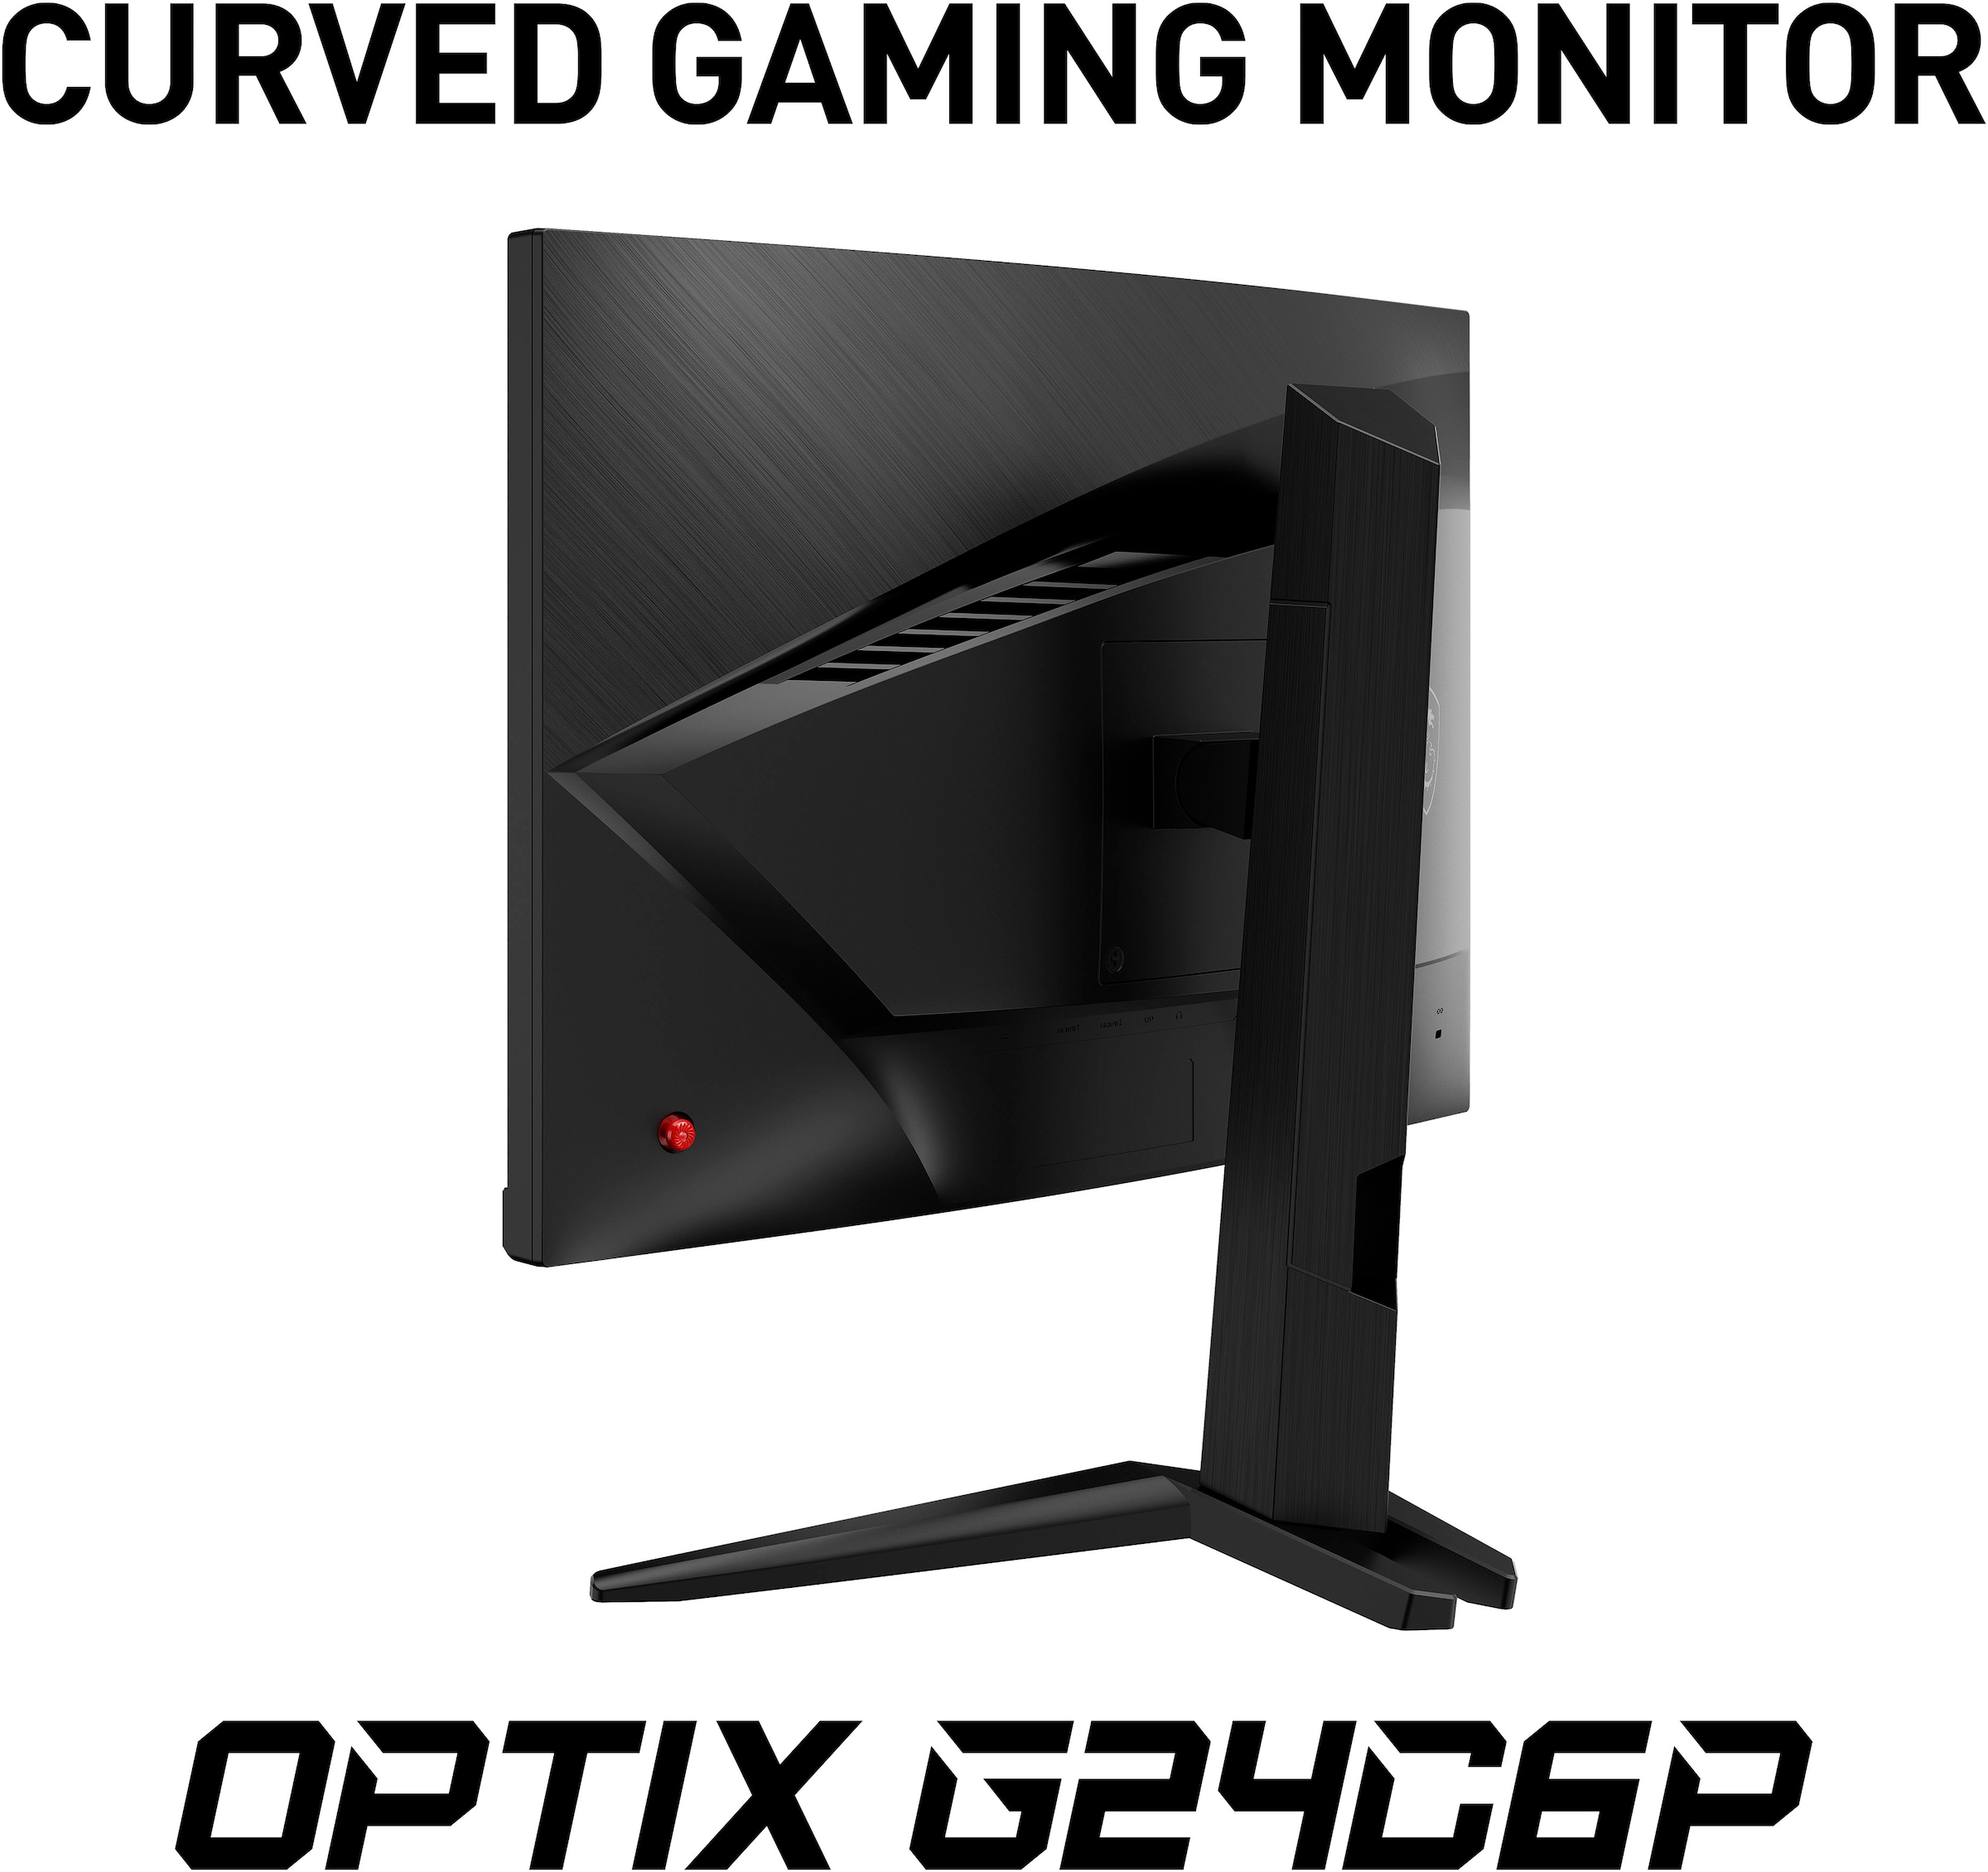 MSI Curved-Gaming-LED-Monitor »Optix G24C6P«, 60 cm/24 Zoll, 1920 x 1080 px, Full HD, 1 ms Reaktionszeit, 144 Hz, höhenverstellbar, 3 Jahre Herstellergarantie